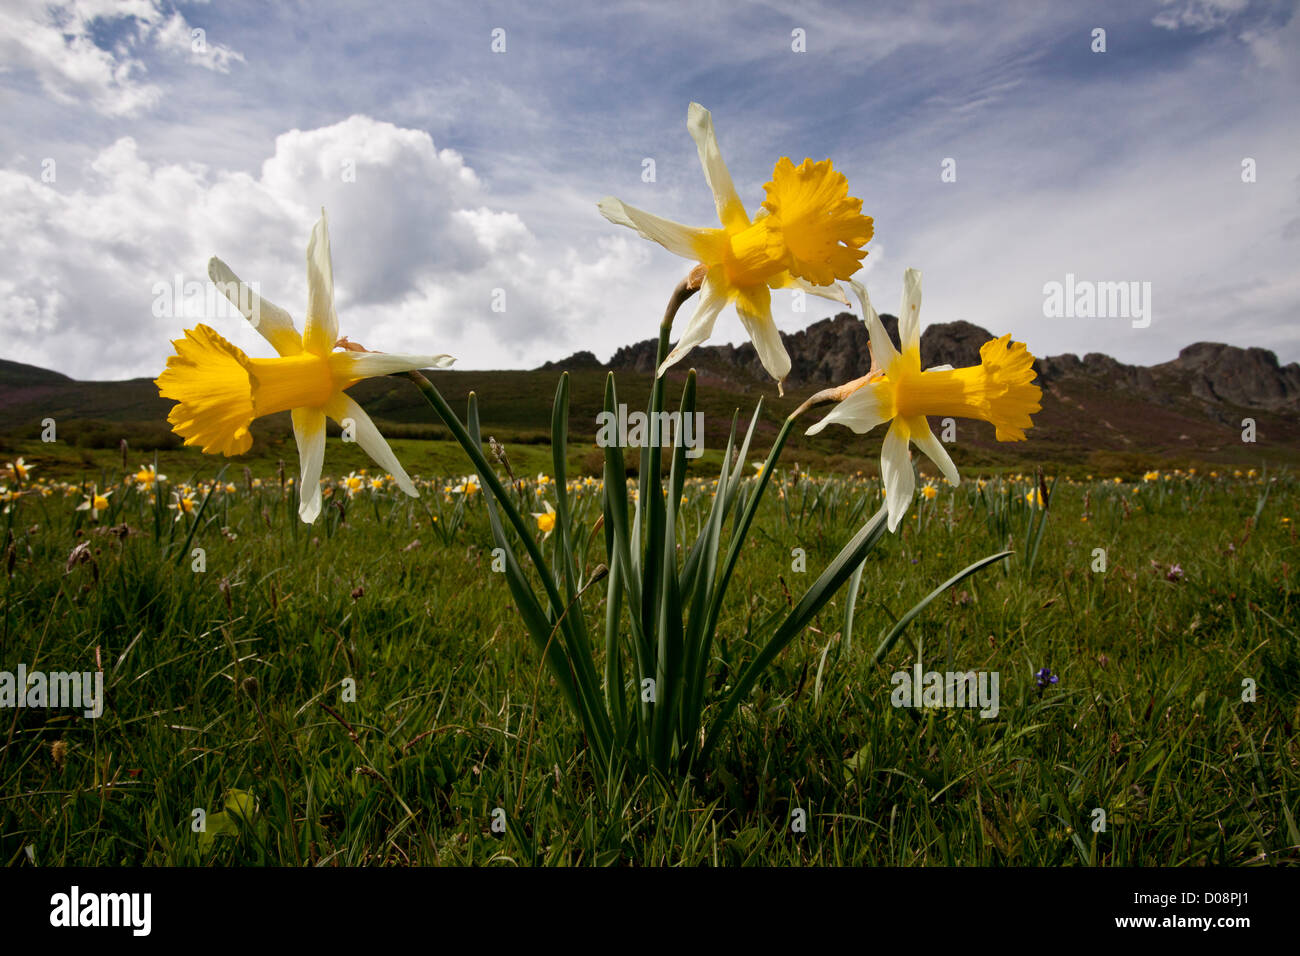 Les jonquilles sauvages (Narcissus pseudonarcissus ssp. nobilis) San Glorio pass (Puerto de San Glorio) à 1600m, Picos de Europa. Espagne Banque D'Images